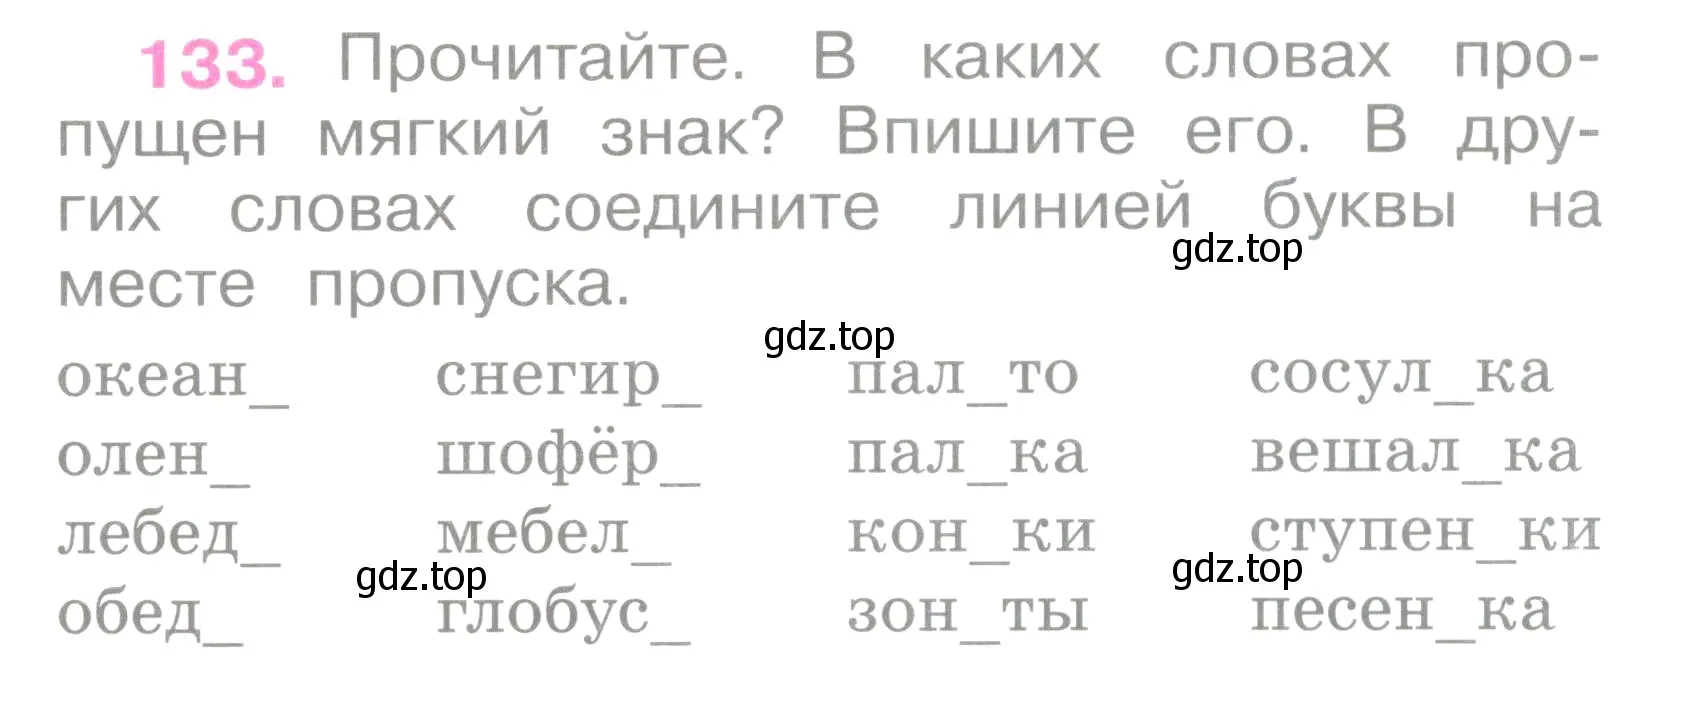 Условие номер 133 (страница 60) гдз по русскому языку 2 класс Канакина, рабочая тетрадь 1 часть